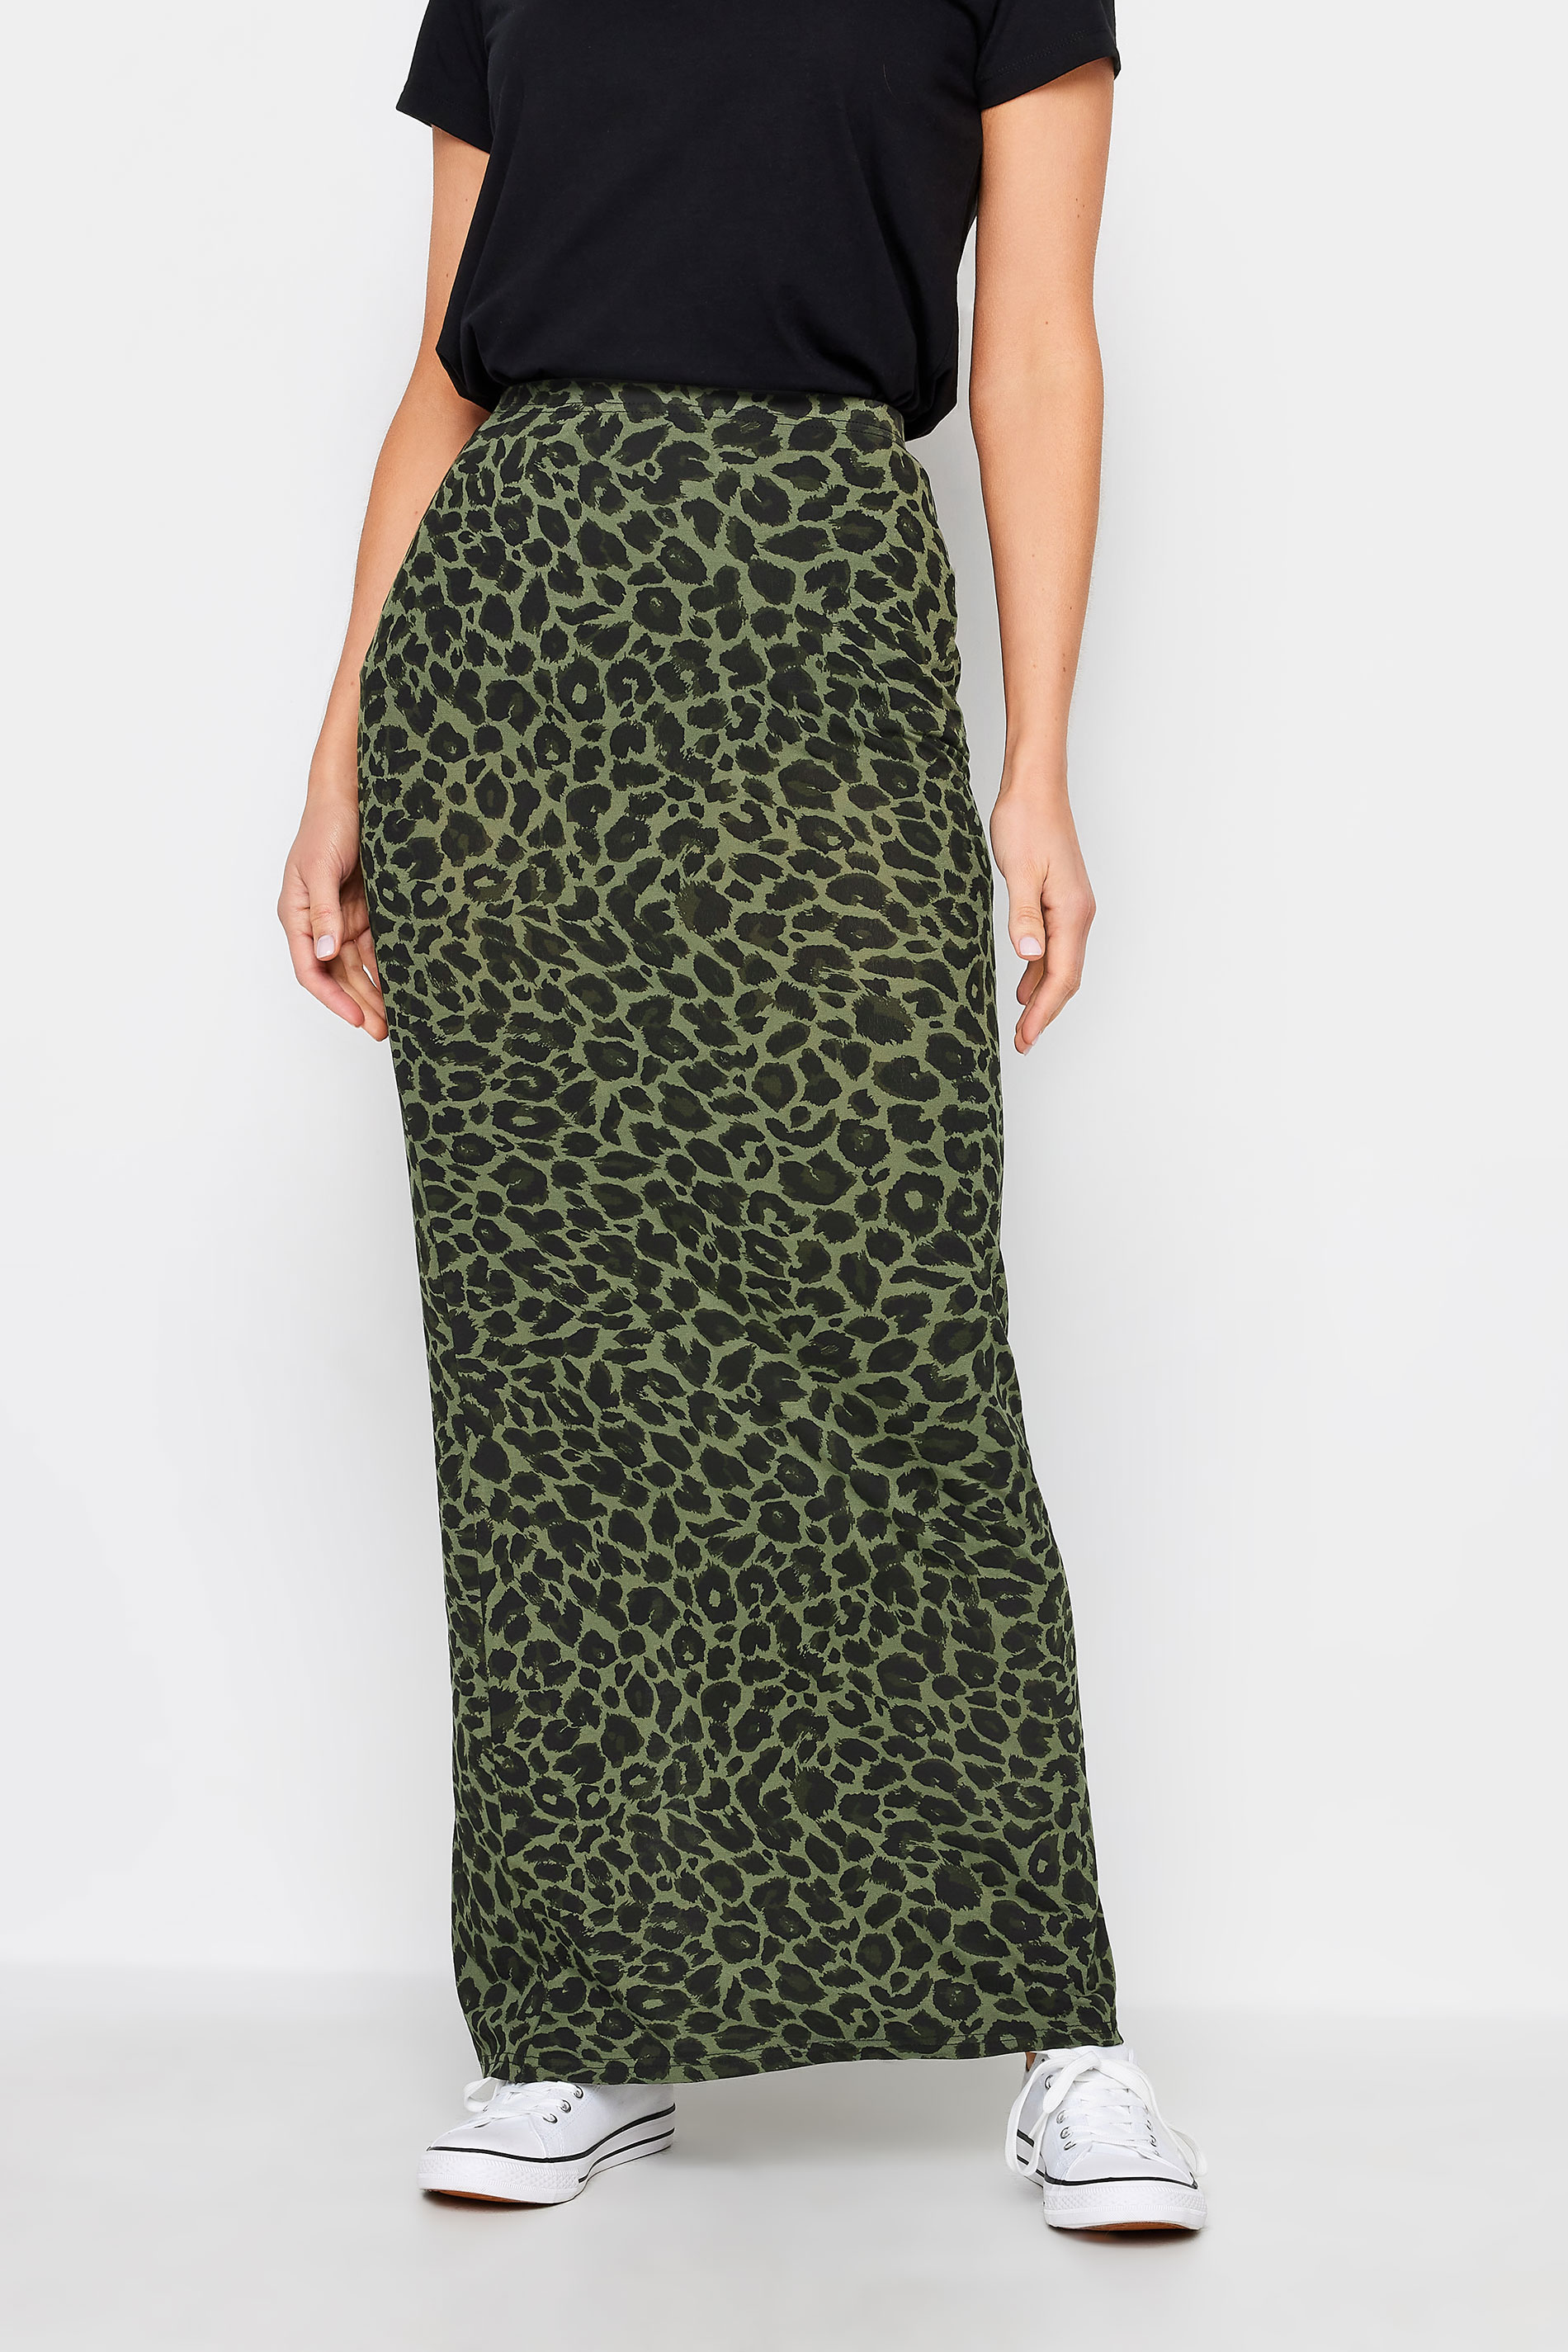 LTS Tall Khaki Green Leopard Print Maxi Skirt | Long Tall Sally 2